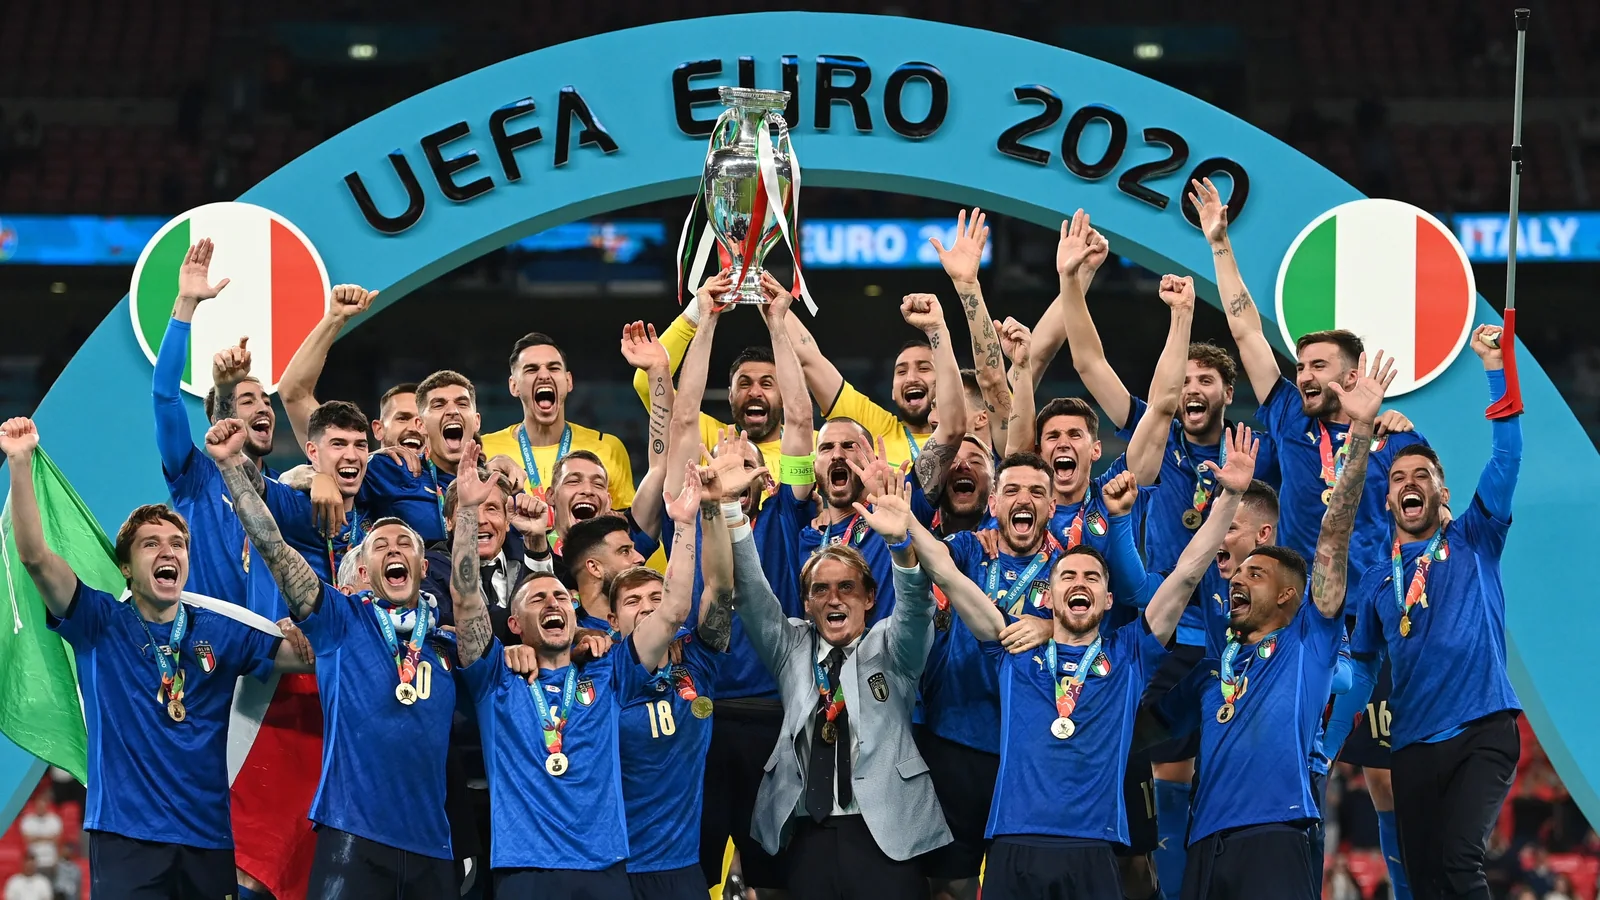 Римский ренессанс. Символическая сборная Евро-2020